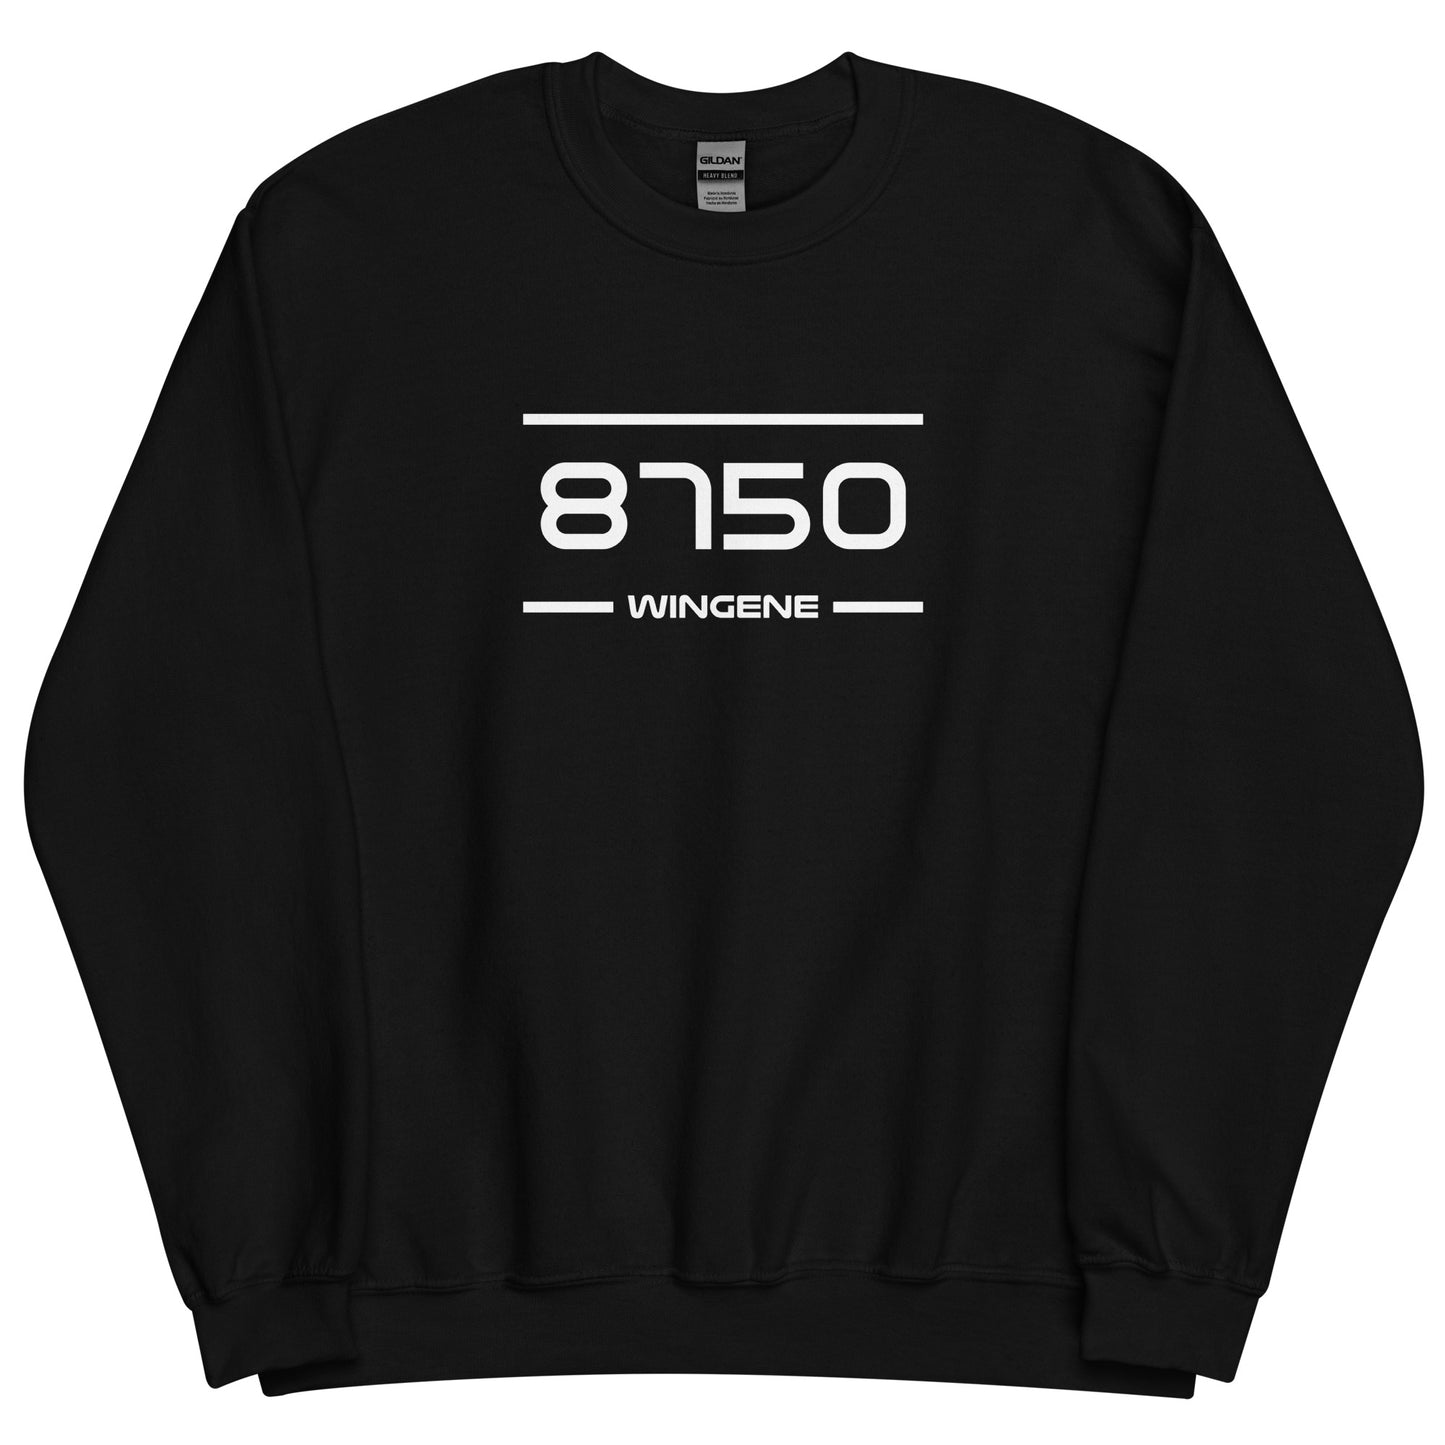 Sweater - 8750 - Wingene (M/V)